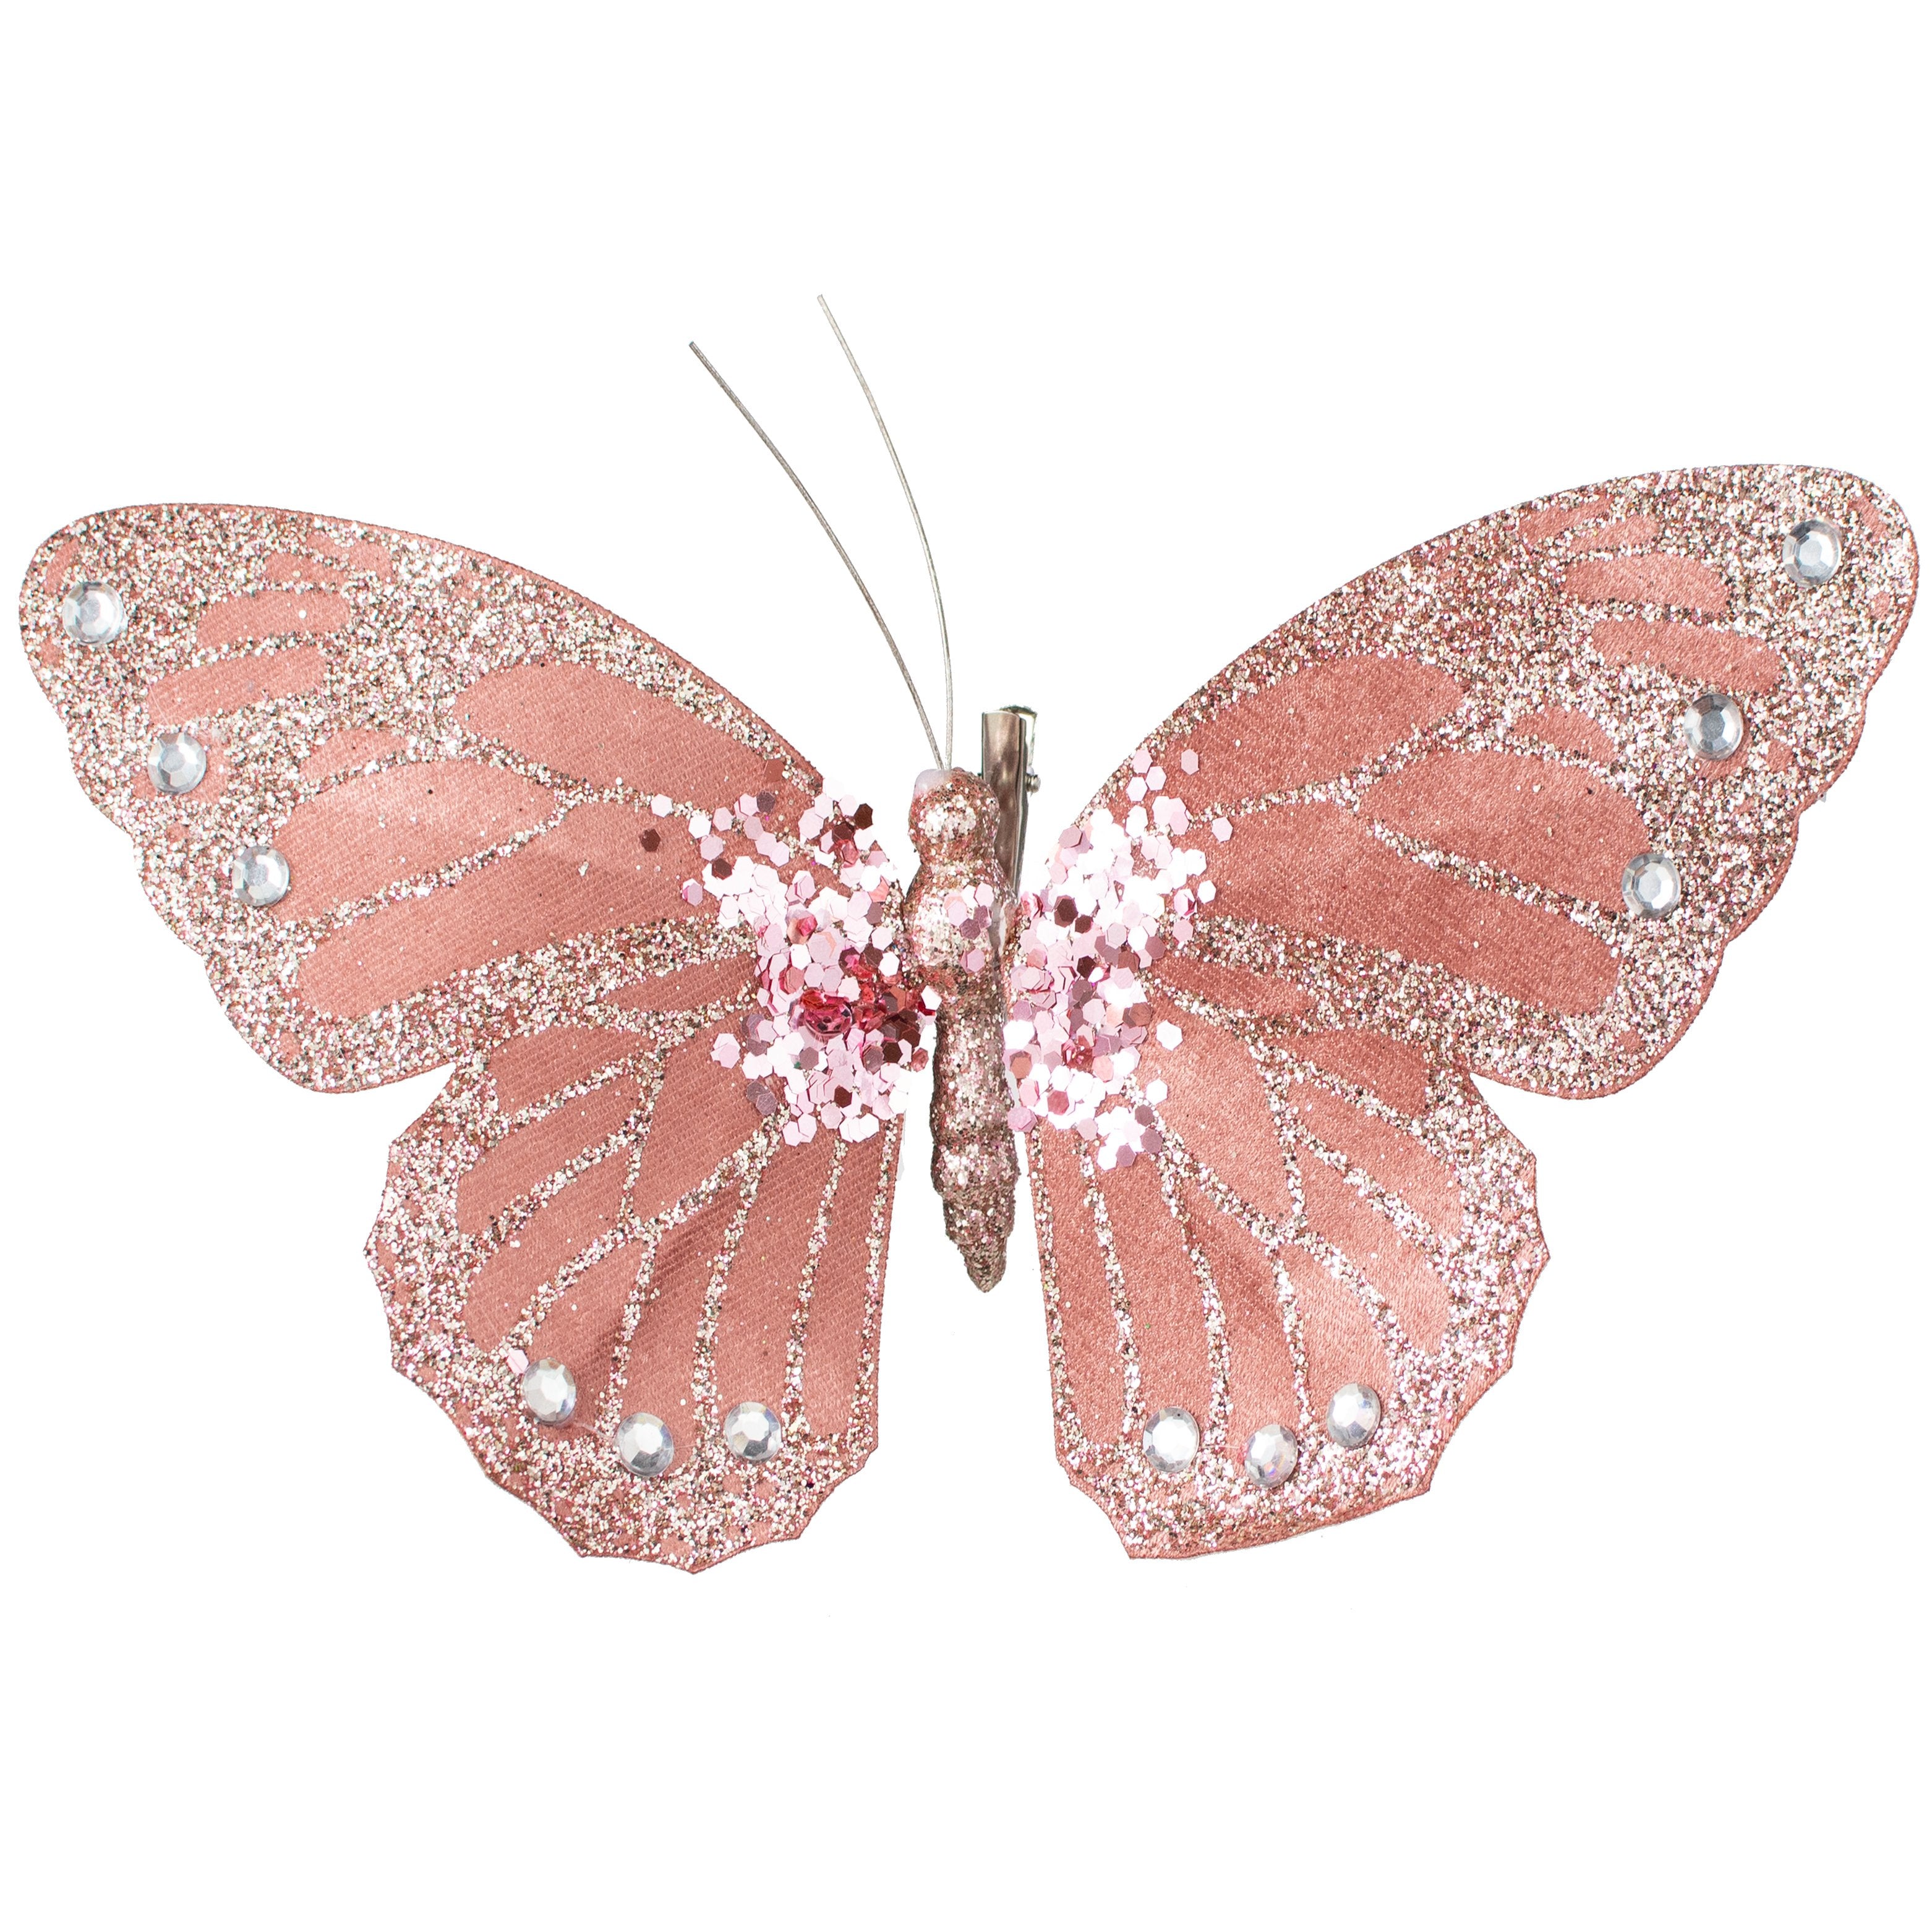 9" Velvet, Glitter, Gem Butterfly Ornament: Dusty Rose Pink